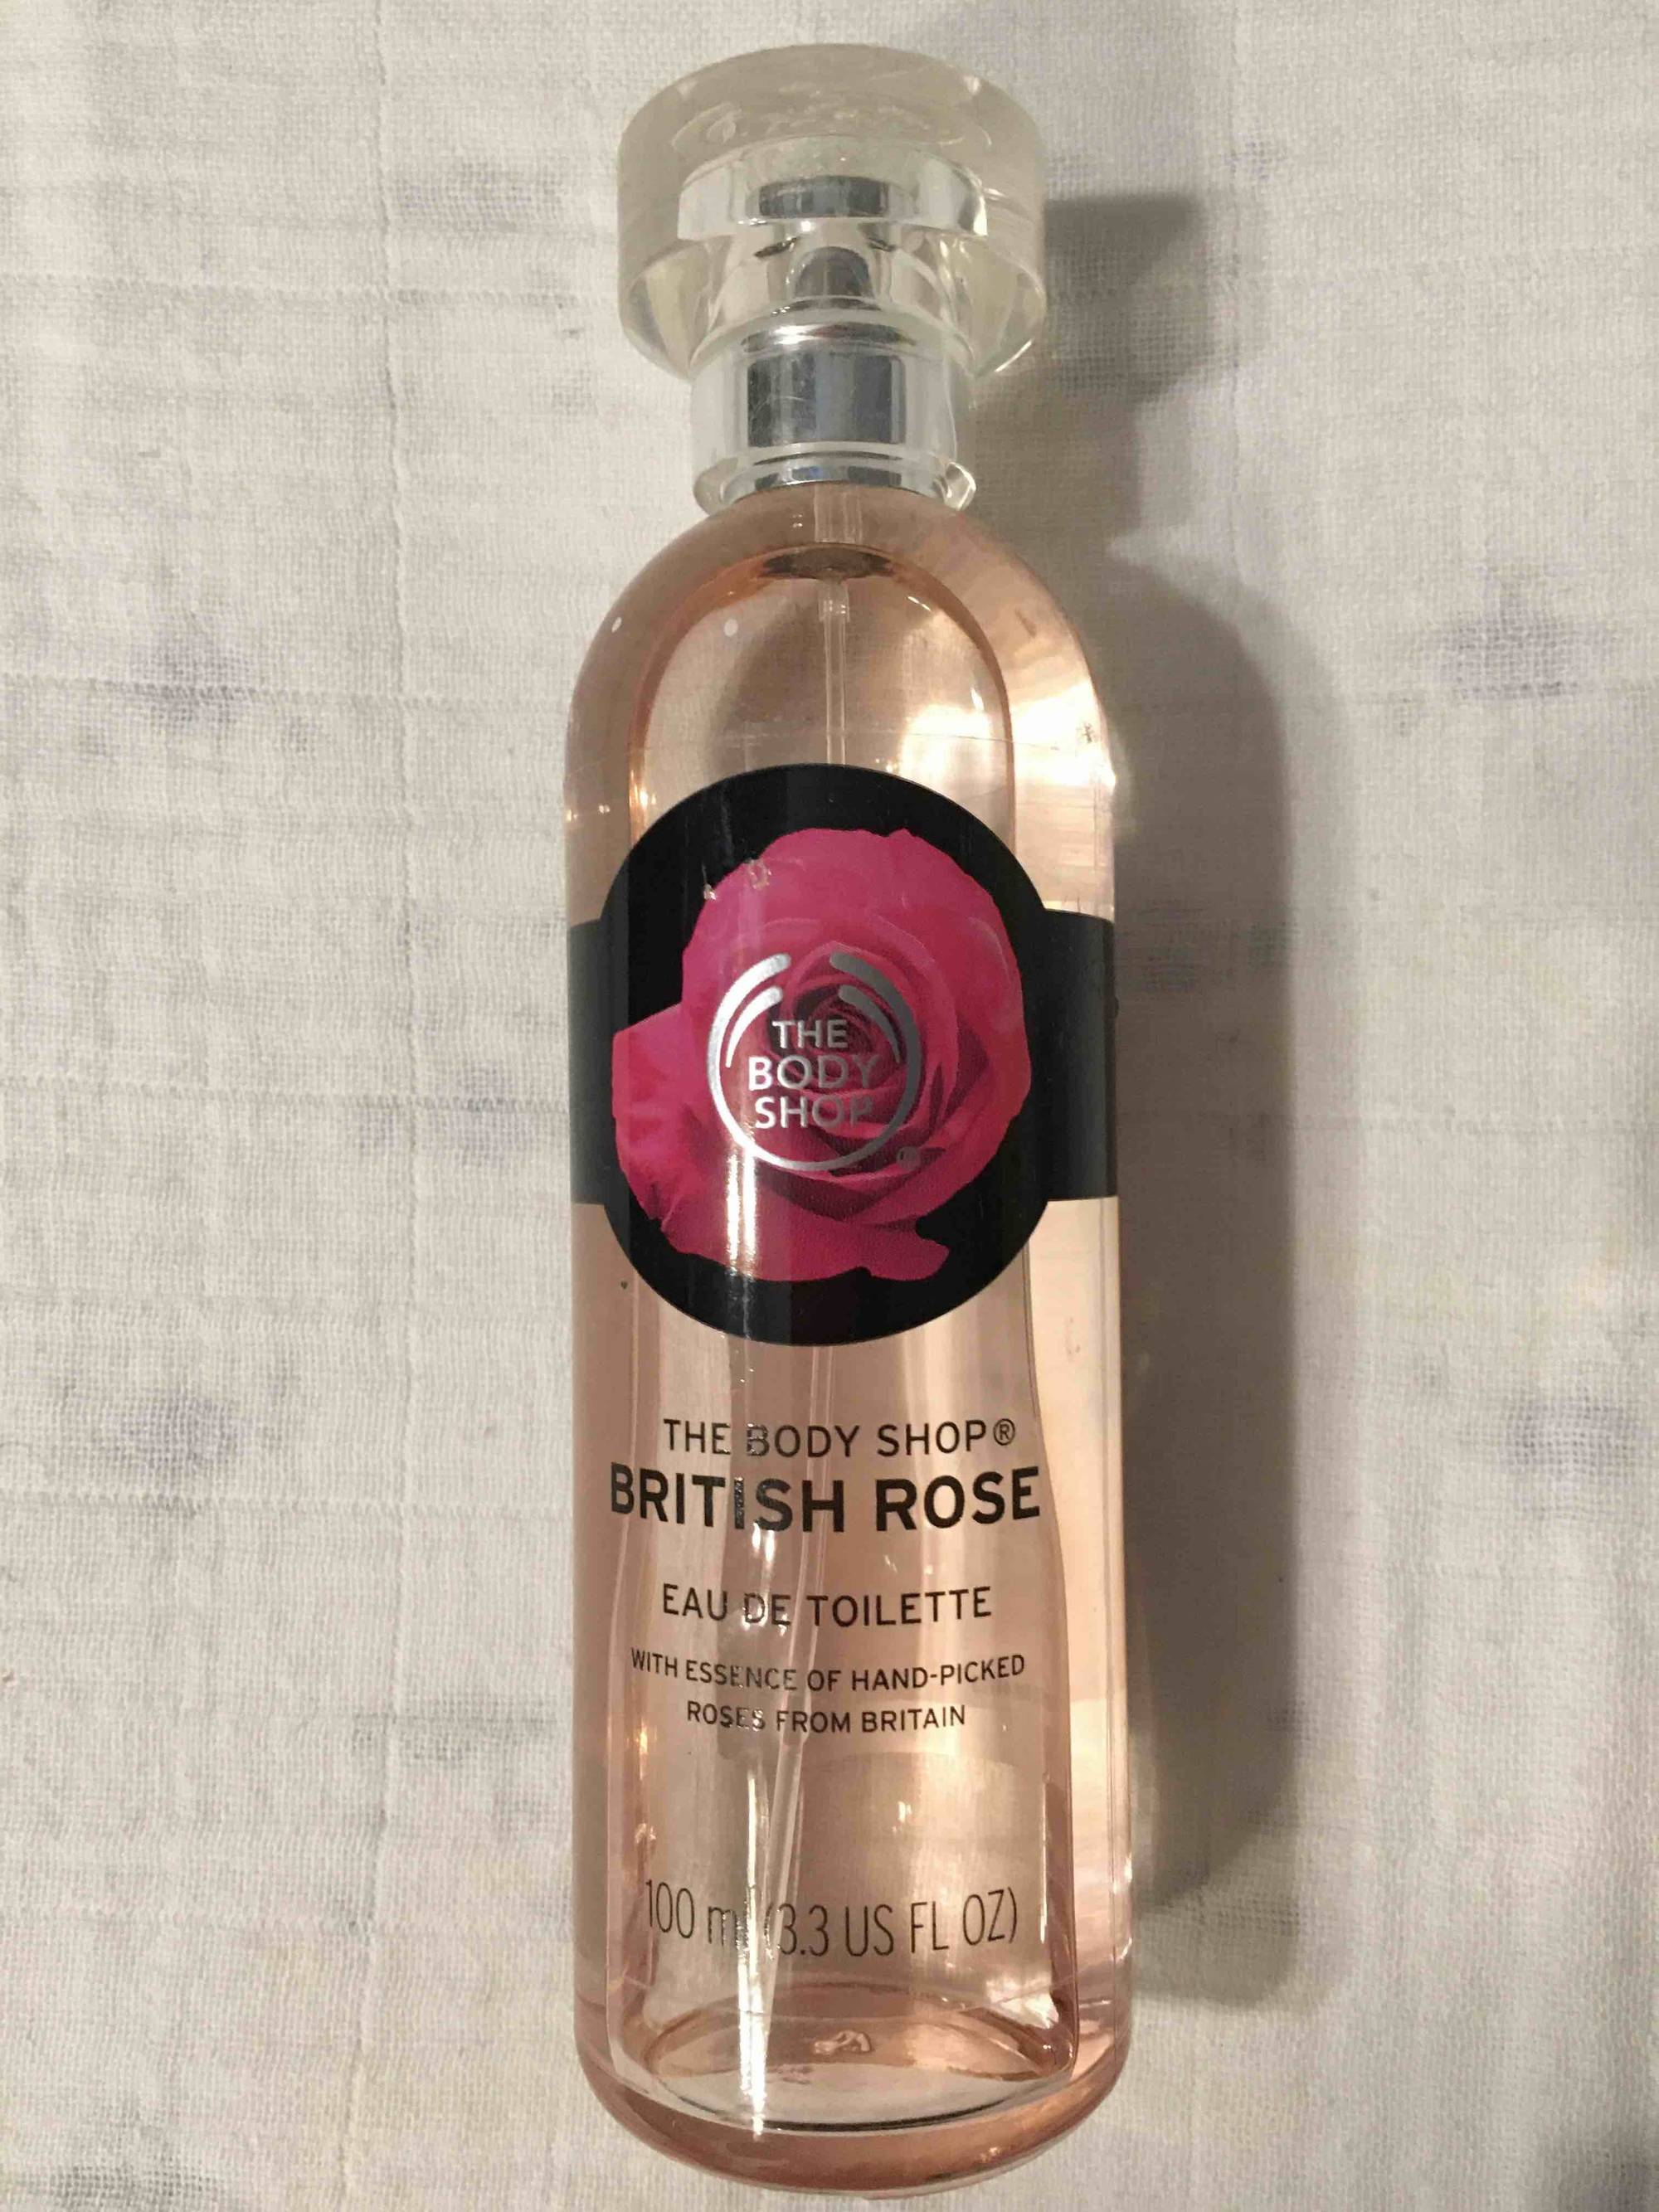 THE BODY SHOP - British rose - Eau de toilette